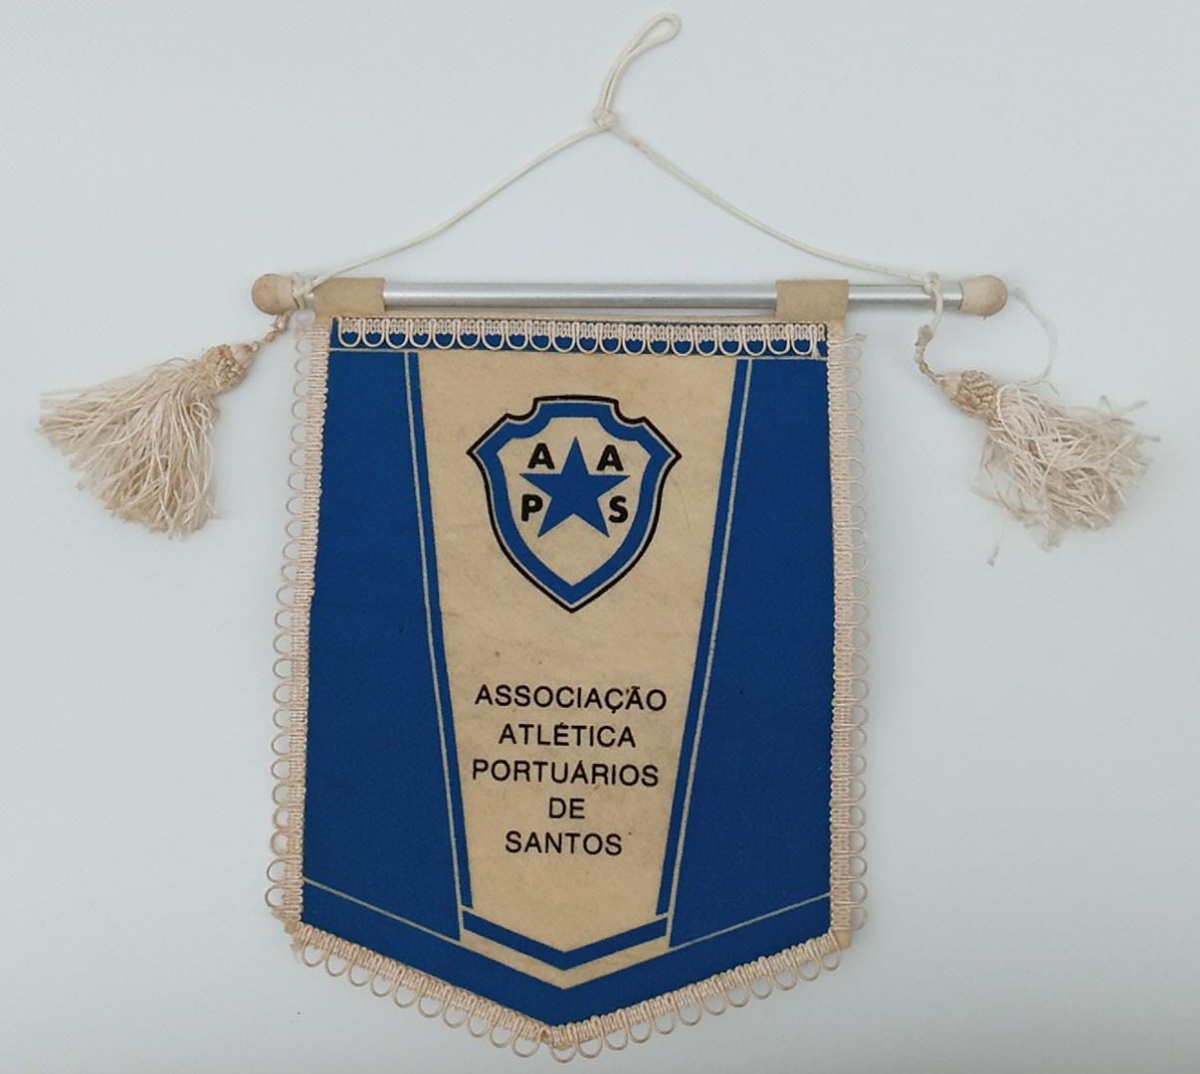 AAPS – Associação Atlética dos Portuários de Santos (Clube Portuários)